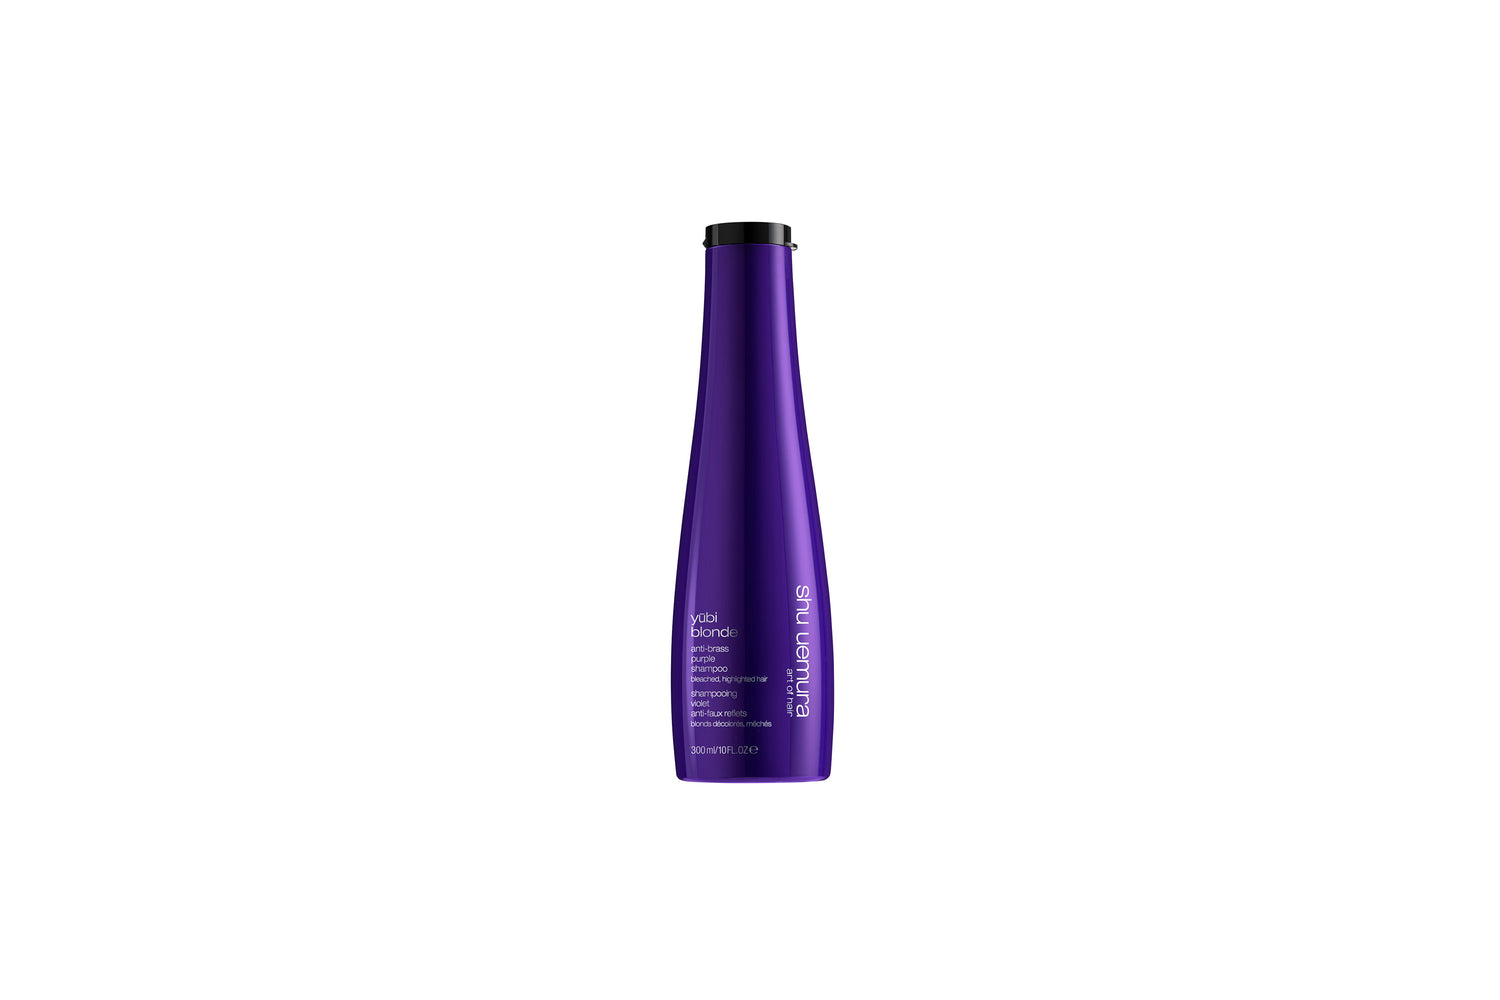 För blekt, slingat blont hår. Yūbi Blonde Anti-Brass Purple Shampoo, med japansk pigment-teknologi, är berikat med extrakt från vit pion. schampot bekämpar oönskade varma undertoner för en långvarig kall blond nyans. produkten rengör varsamt och adderar en naturlig lyster till håret.  300 ml